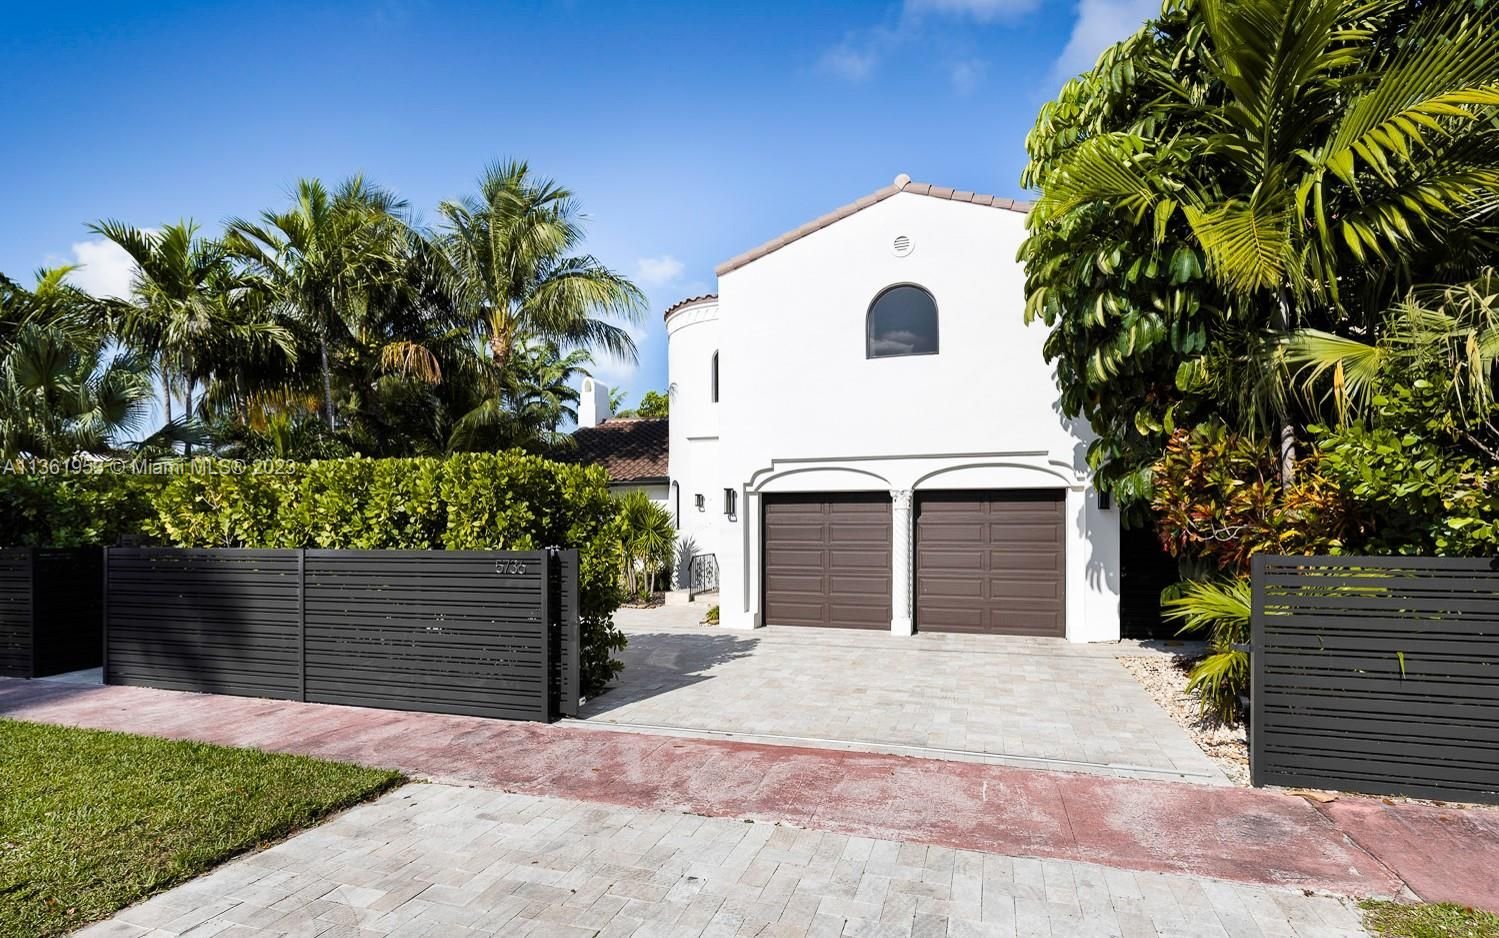 Real estate property located at 5736 La Gorce Dr, Miami-Dade County, Miami Beach, FL